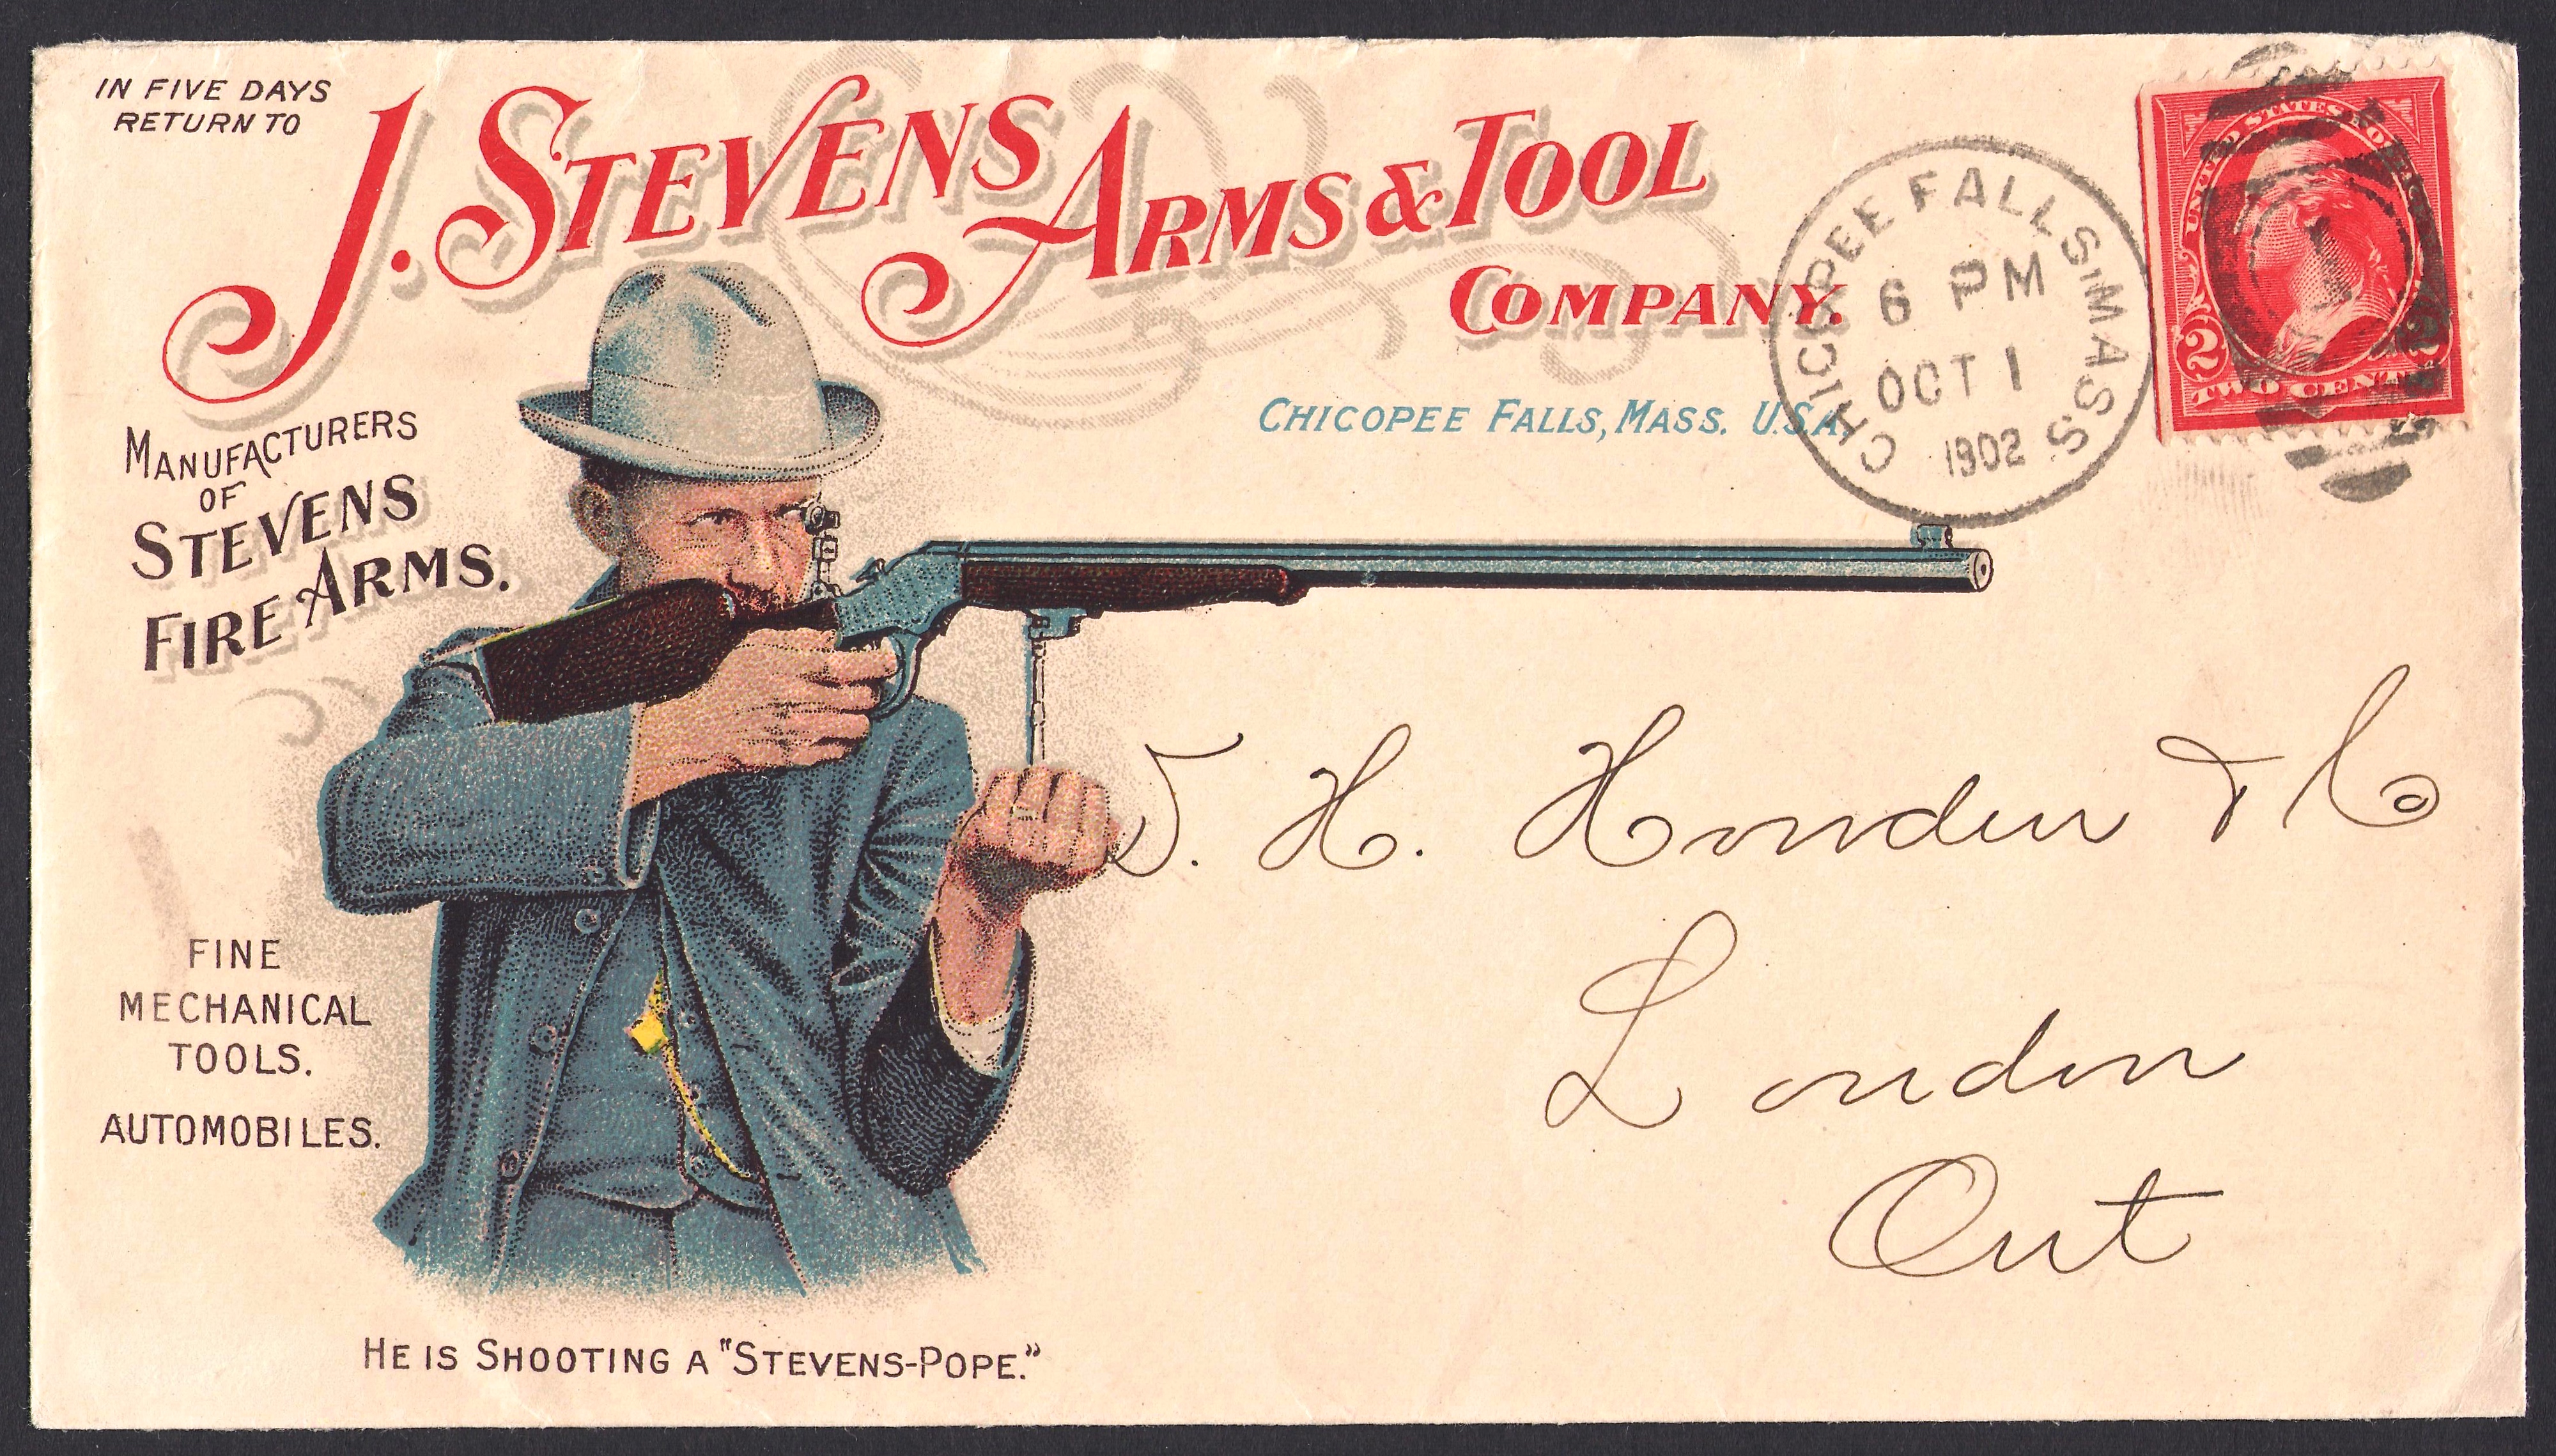 J. Stevens Firearms Advertising Cover